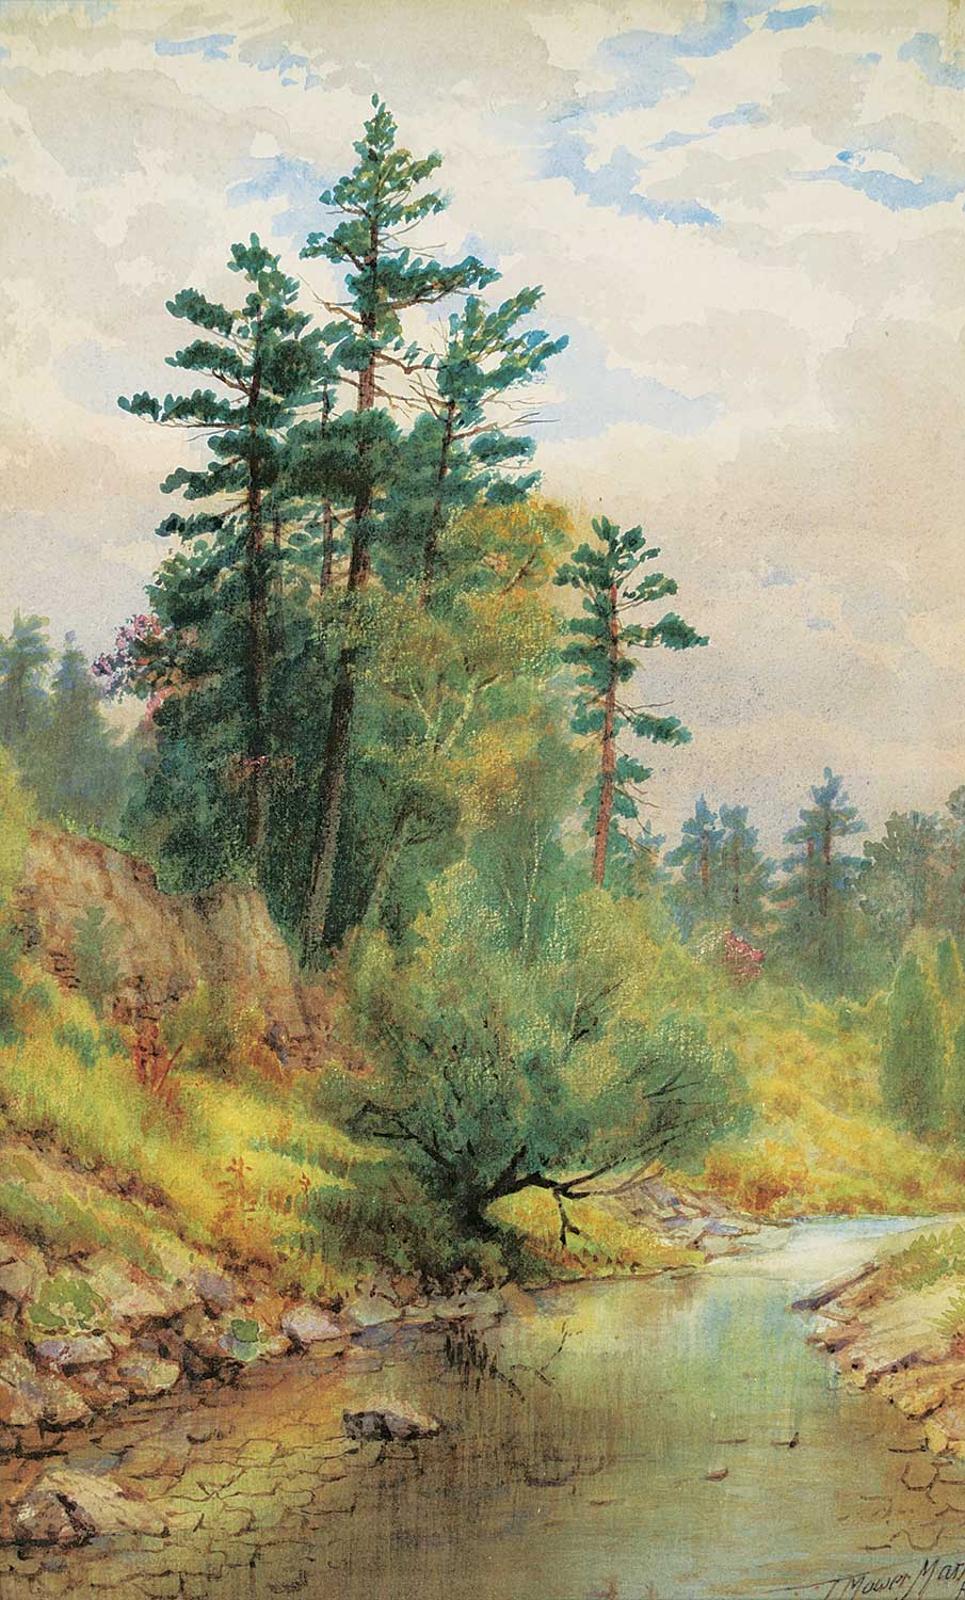 Thomas Mower Martin (1838-1934) - Calm River Under Cloudy Skies